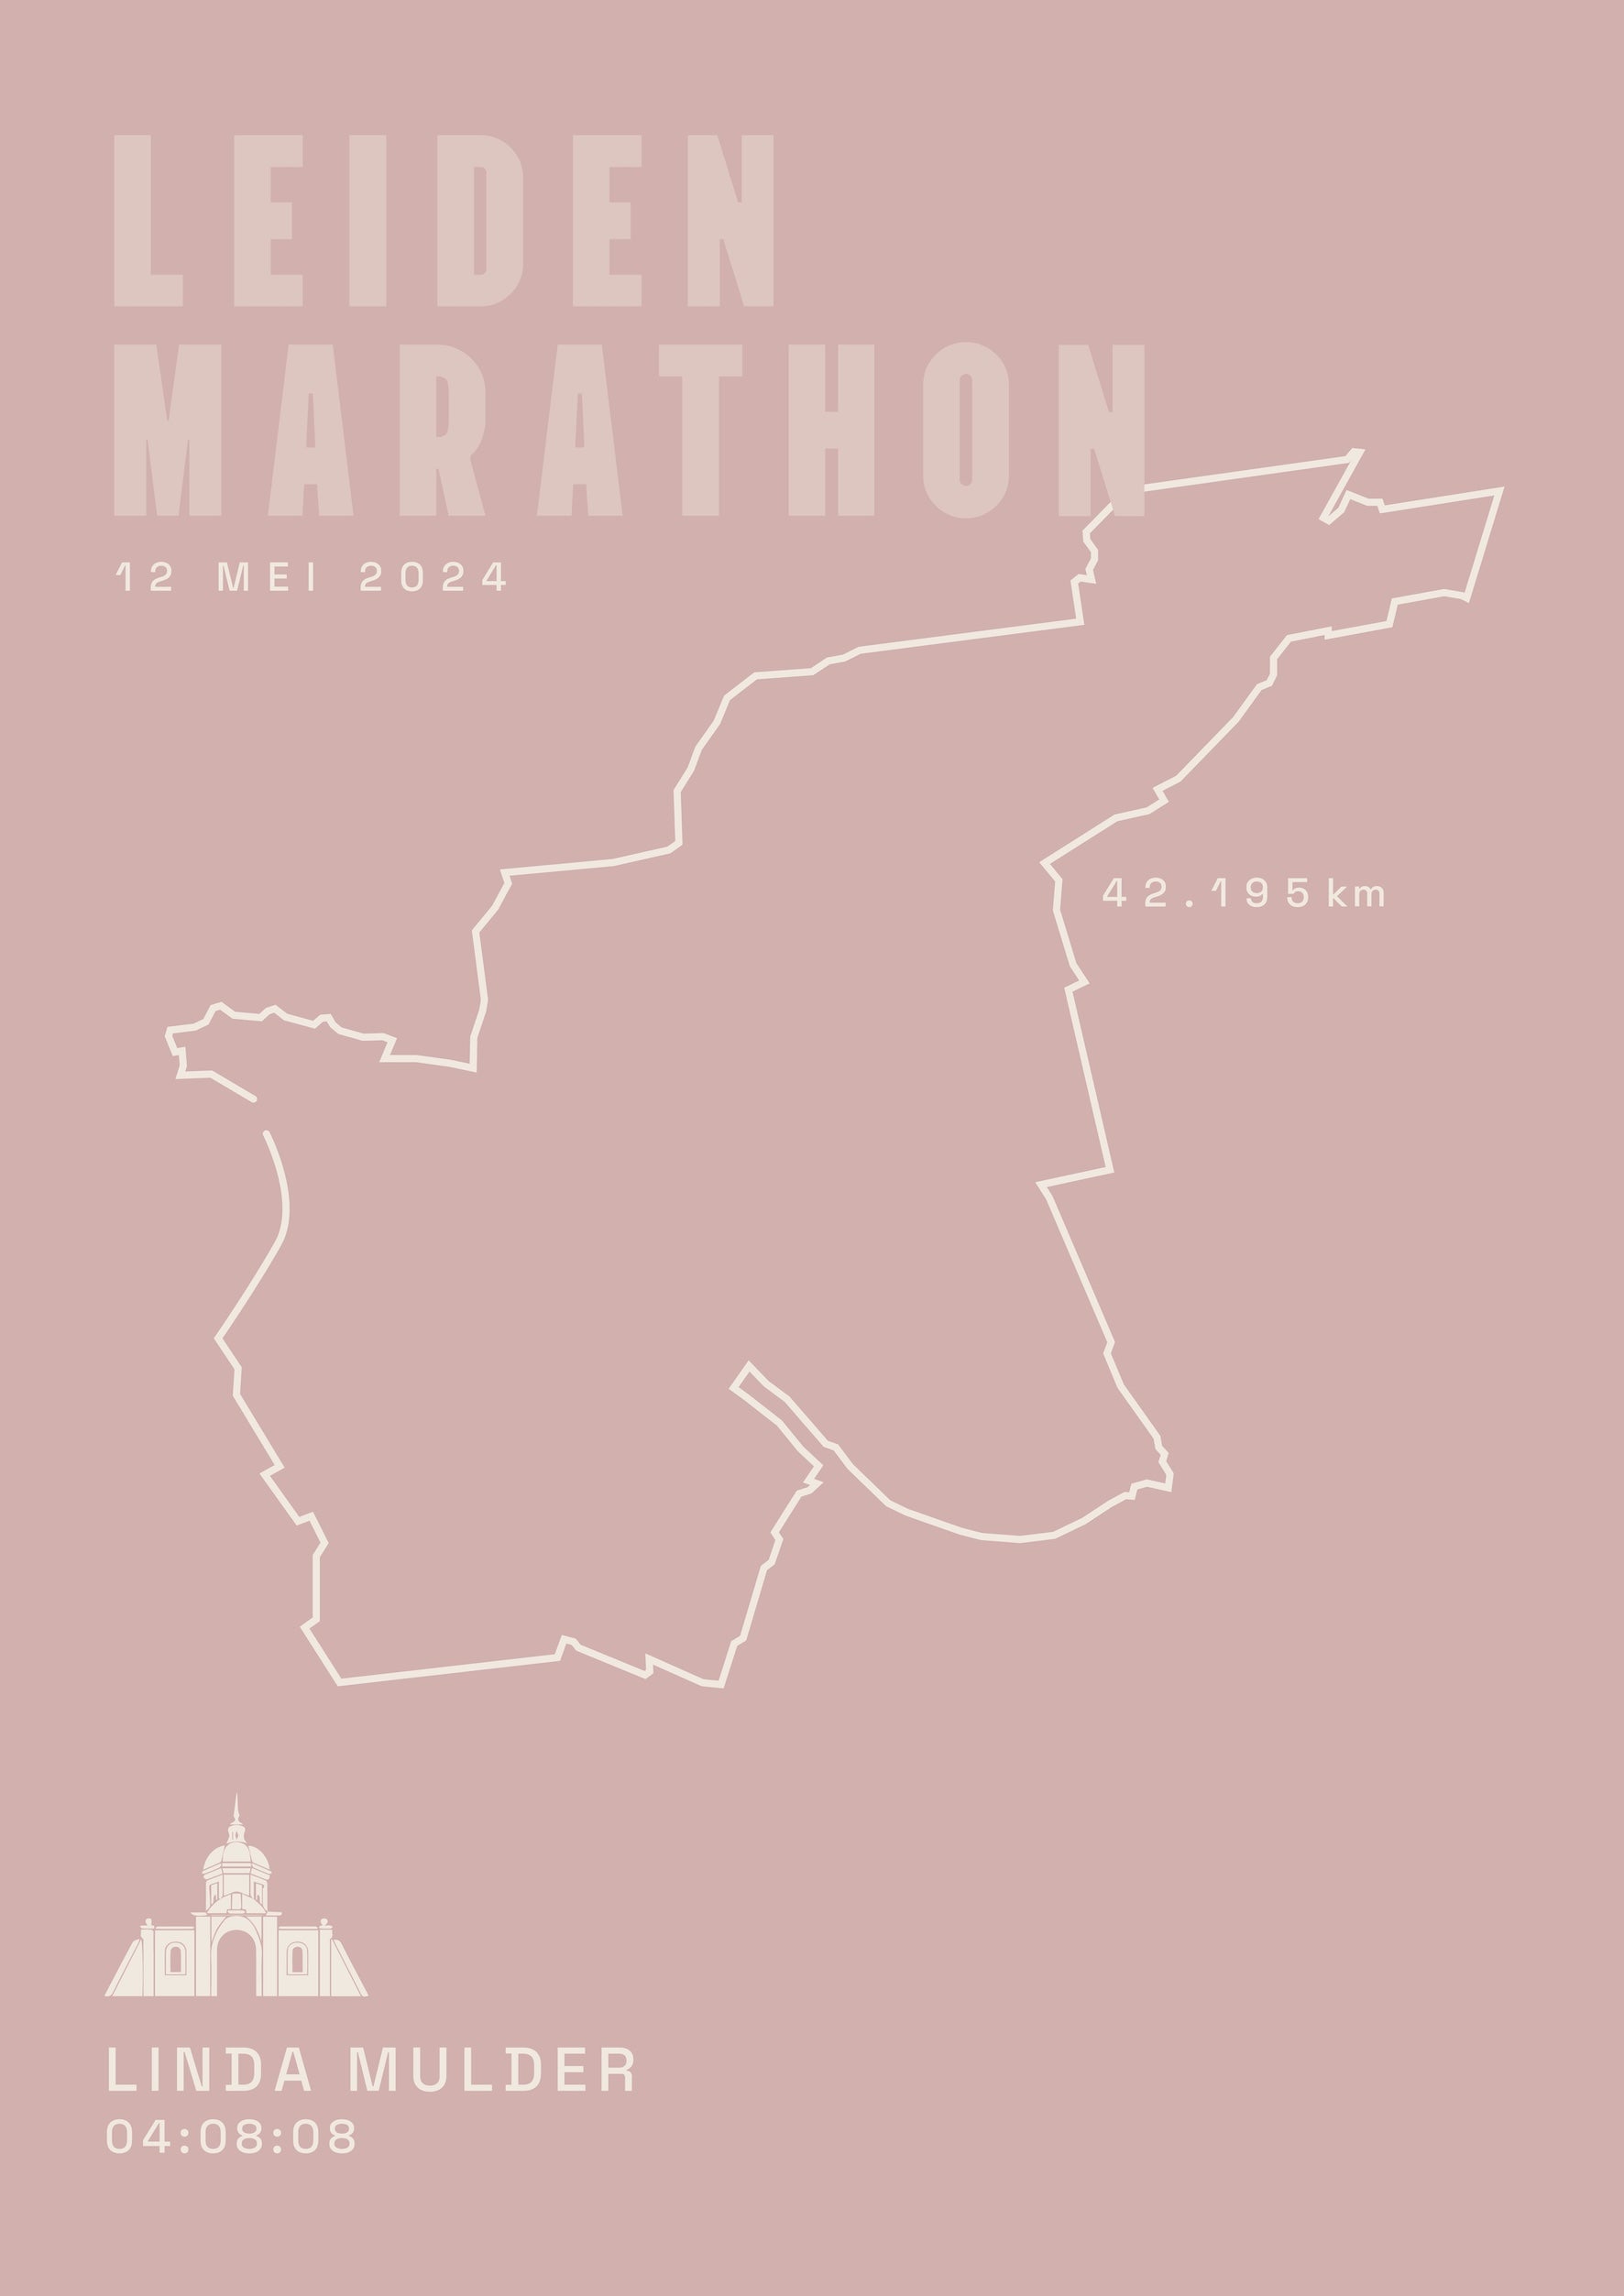 Leiden Marathon - Classic Solid - Poster